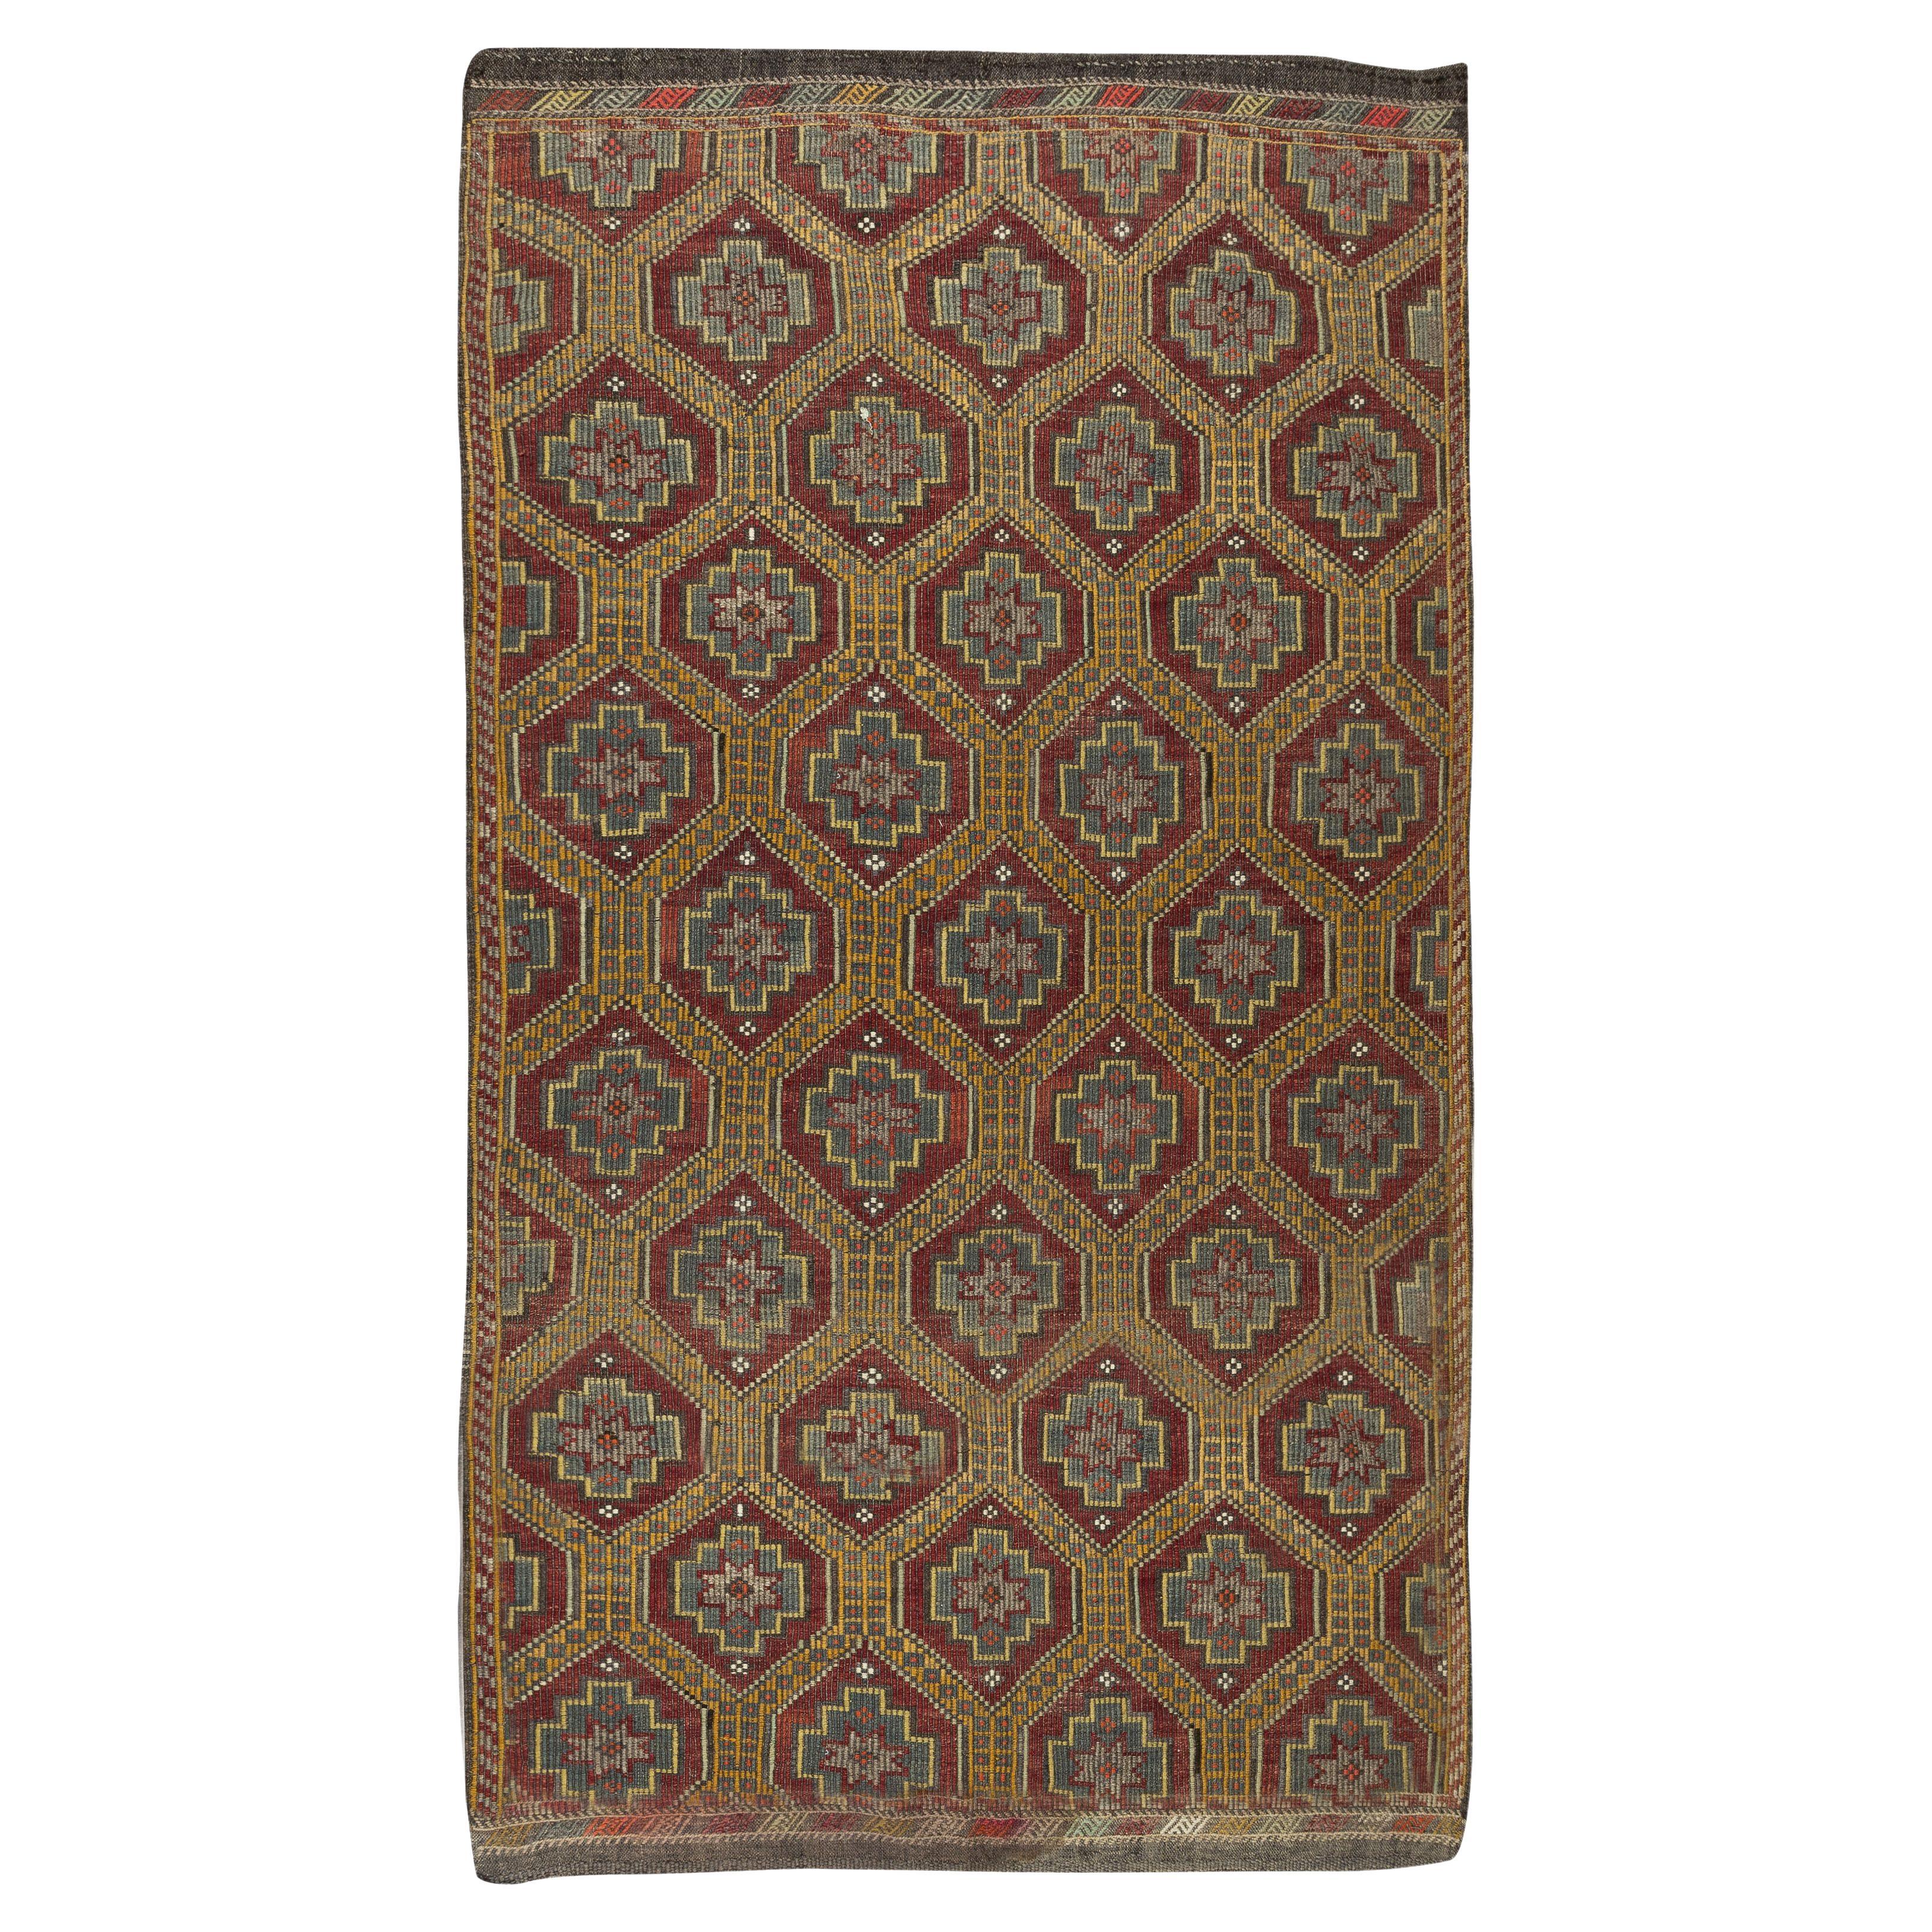 5.5x9.4 Ft Vintage Türkisch Jijim Kilim, Floral Muster Handgewebter Teppich, 100% Wolle